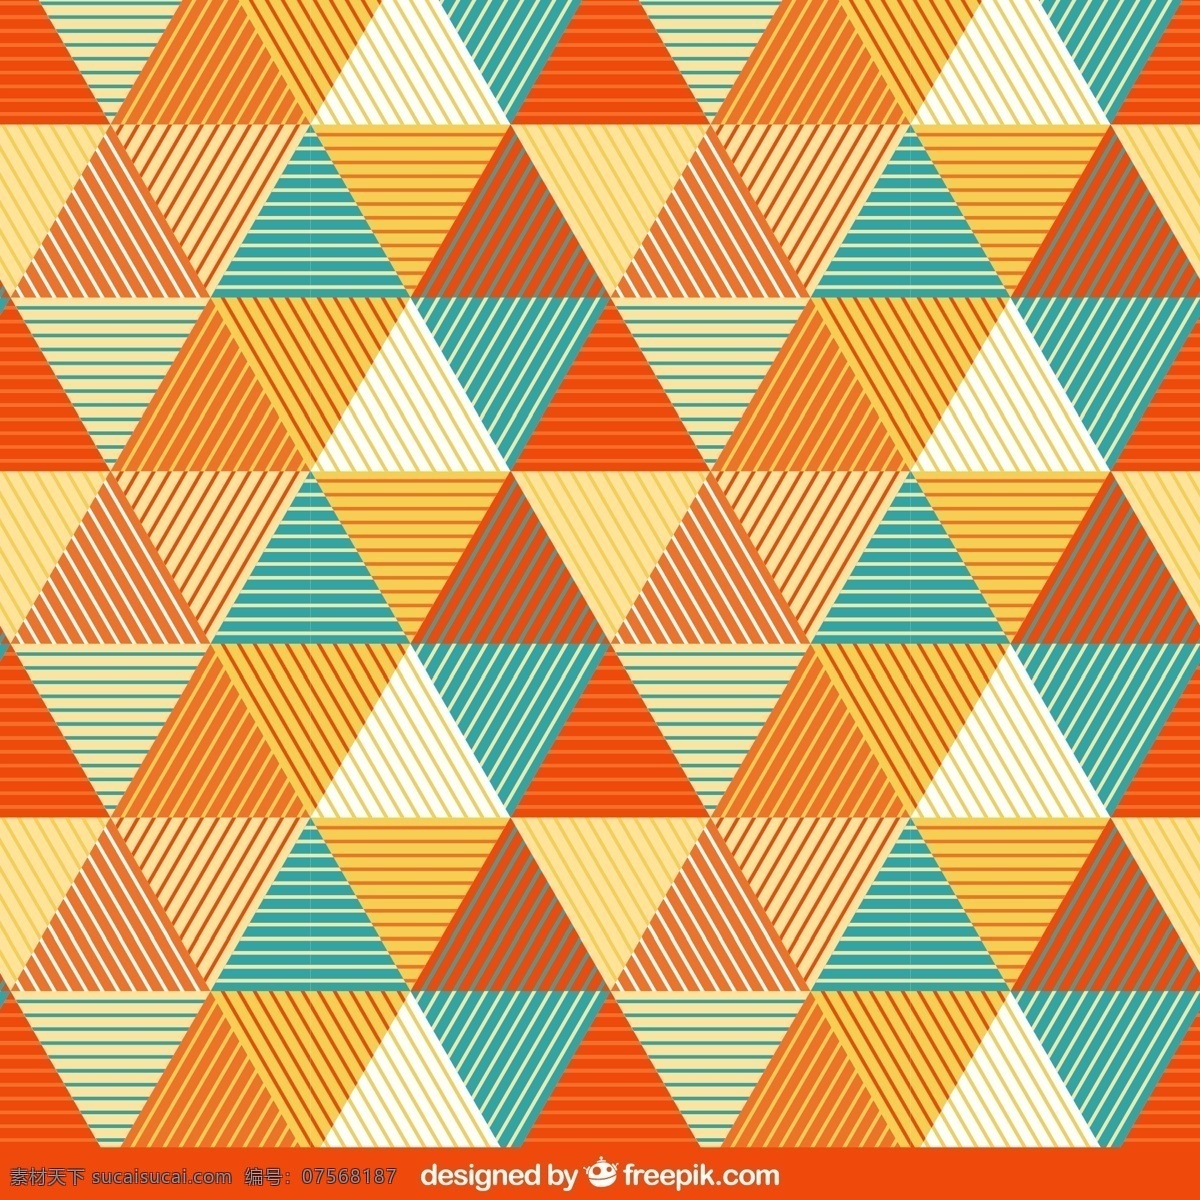 彩色 三角 无缝 背景 矢量 条纹 三角形 无缝背景 矢量图... 橙色